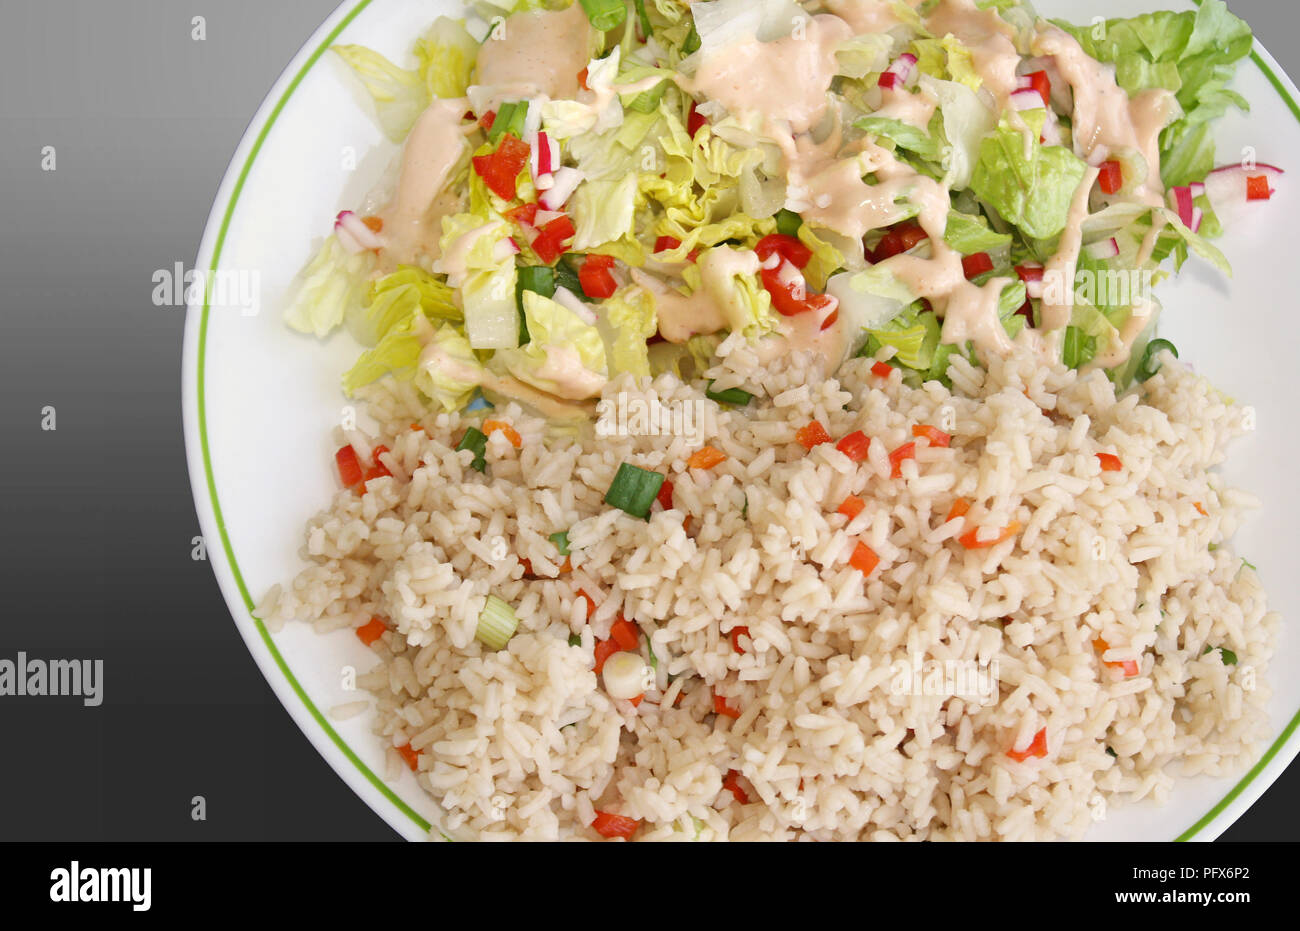 Pasto sano dei cereali integrali riso marrone con verdure e un fresco giardino insalata condito con un condimento di consistenza cremosa Foto Stock